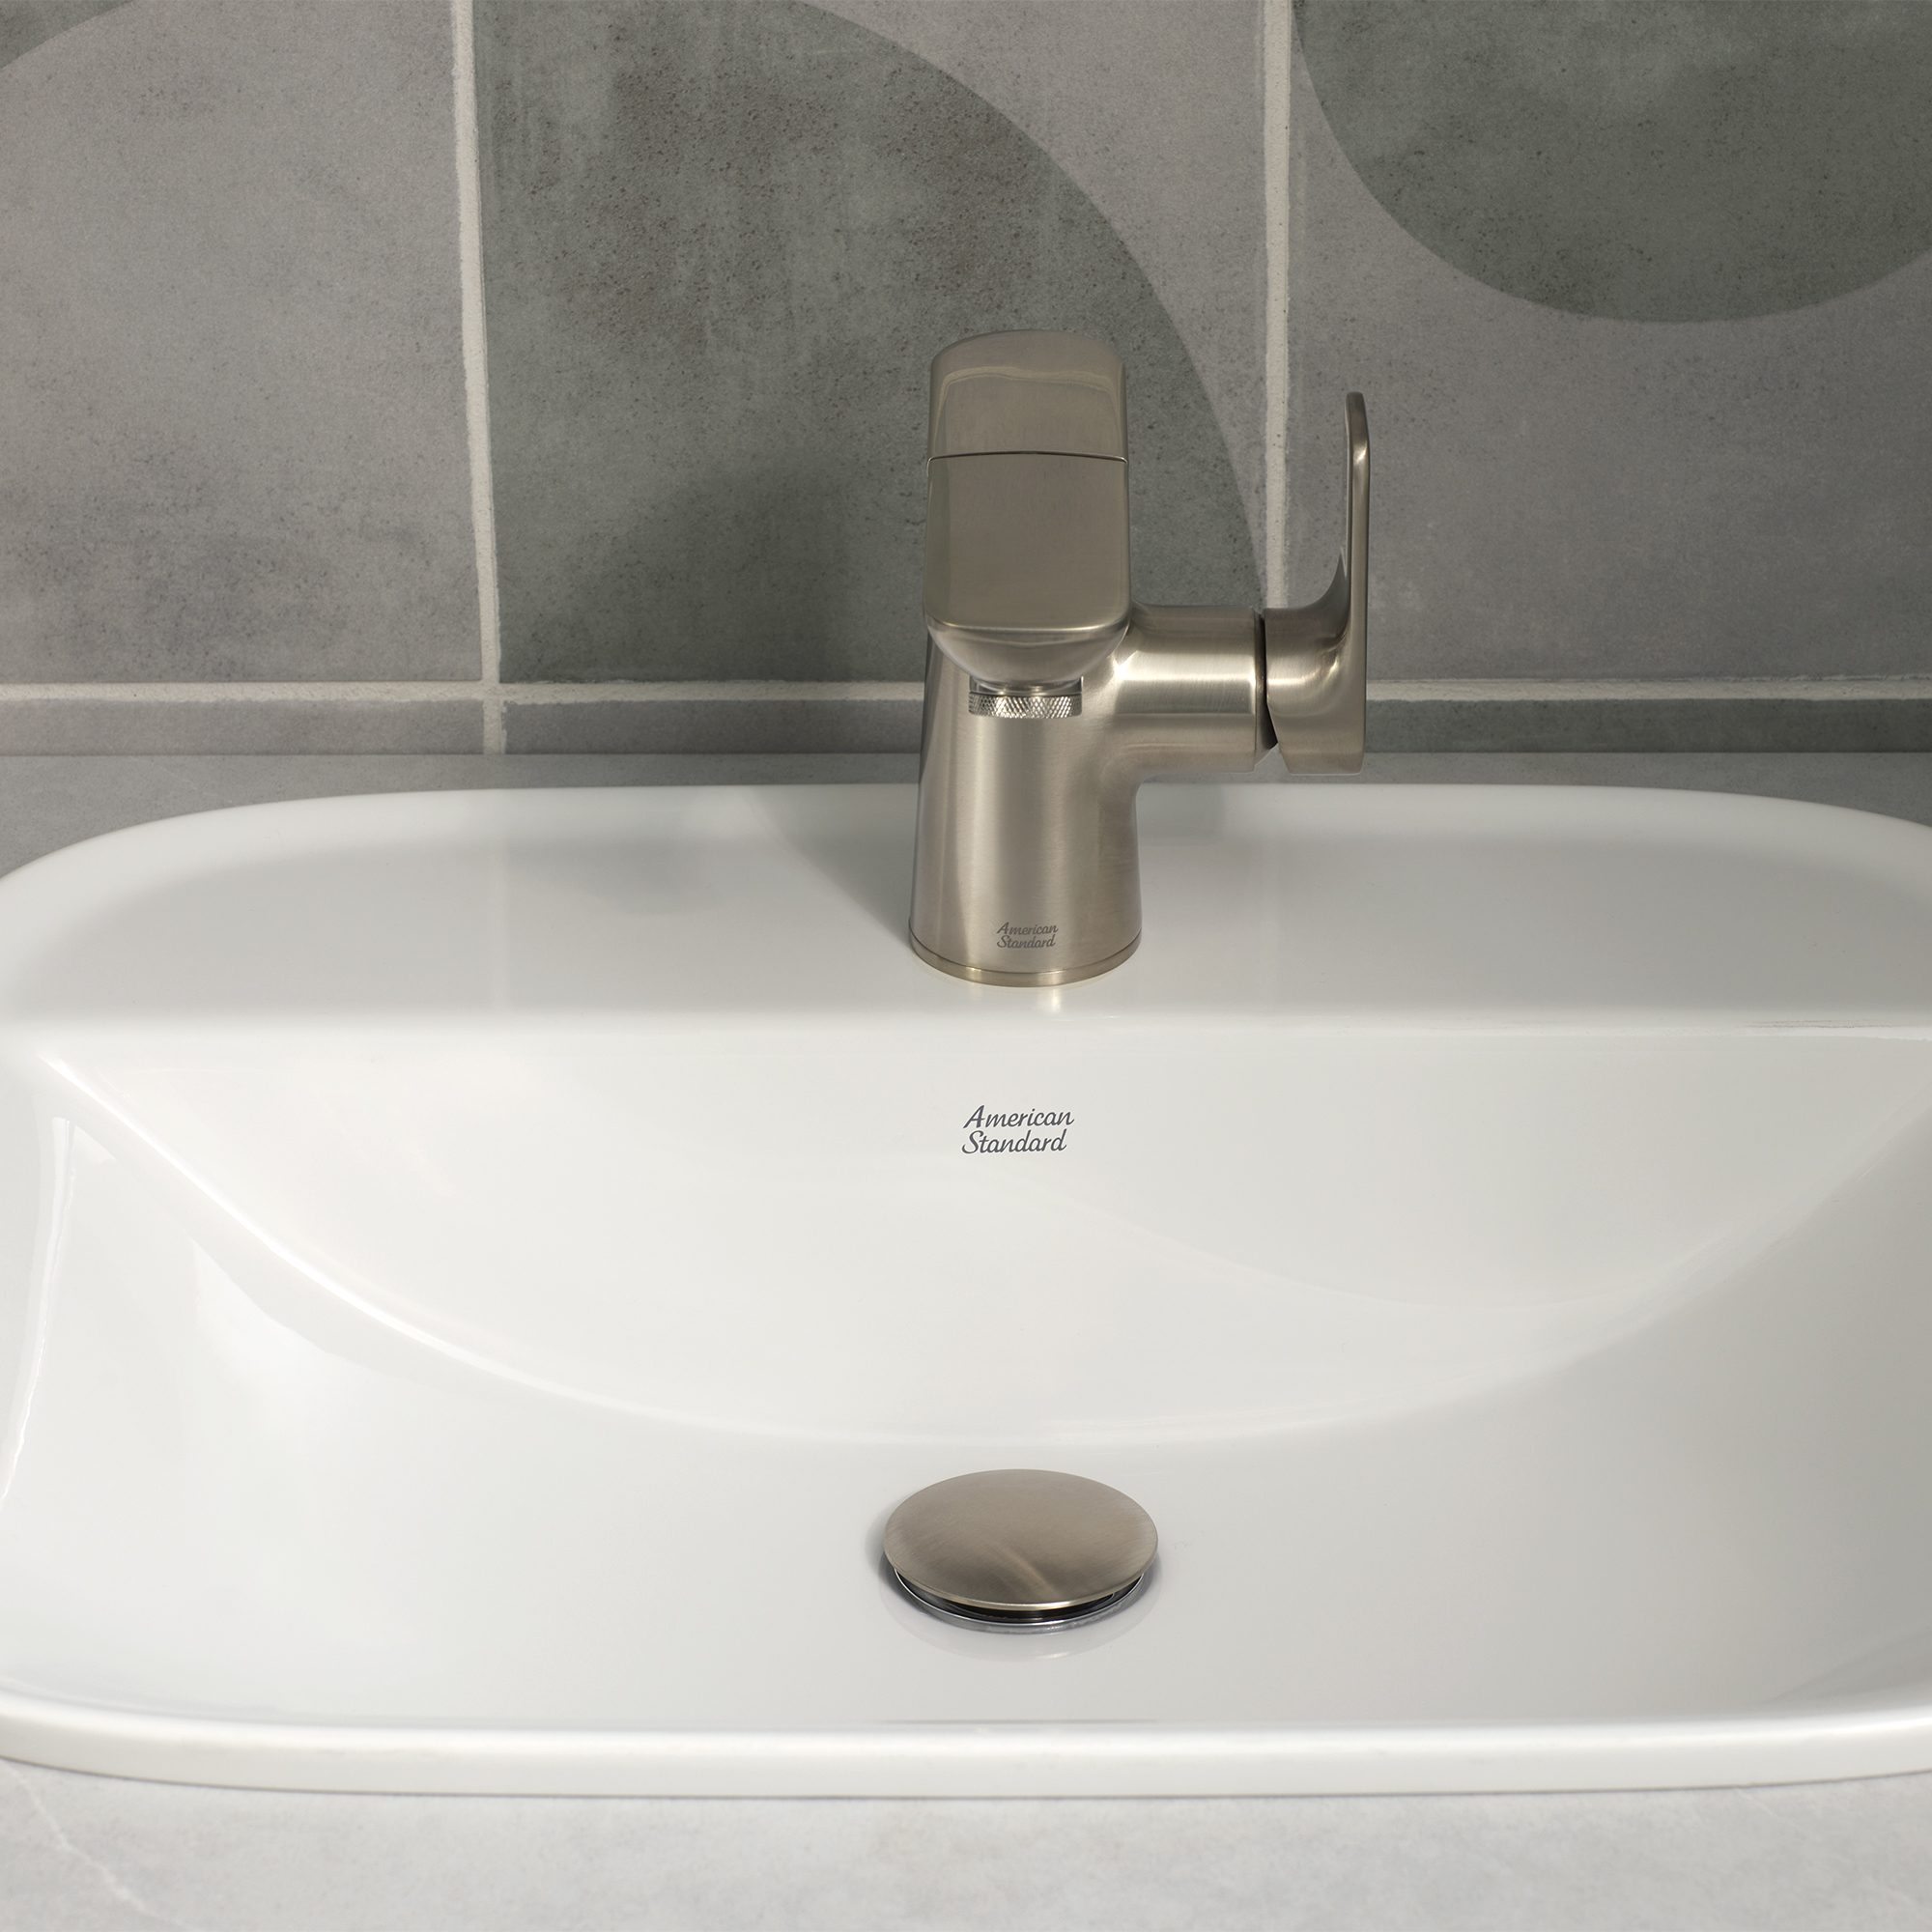 AspirationsMC - robinet de salle de bain rétractable à poignée simple à levier, 1,2 gpm/ 4,5 L/min